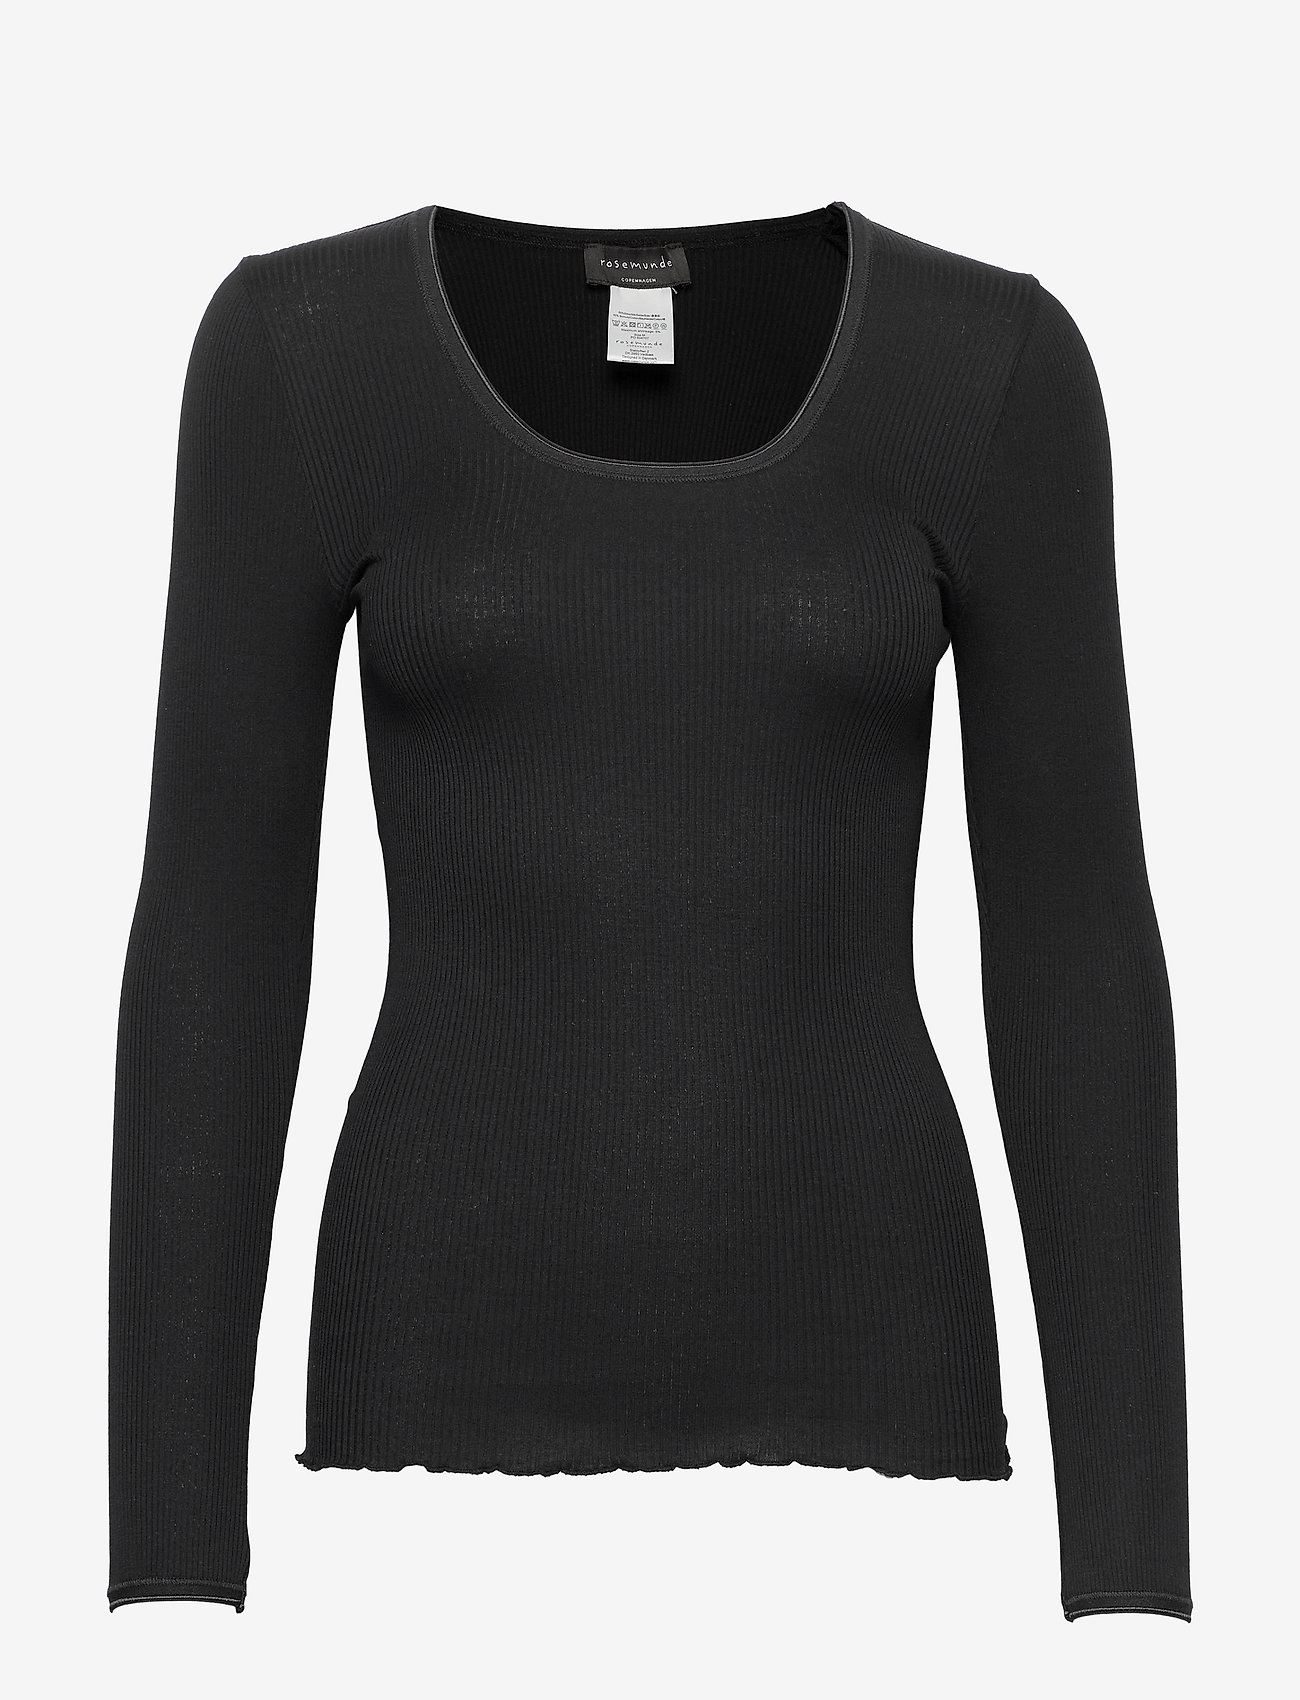 Rosemunde - Silk t-shirt - långärmade toppar - black - 0